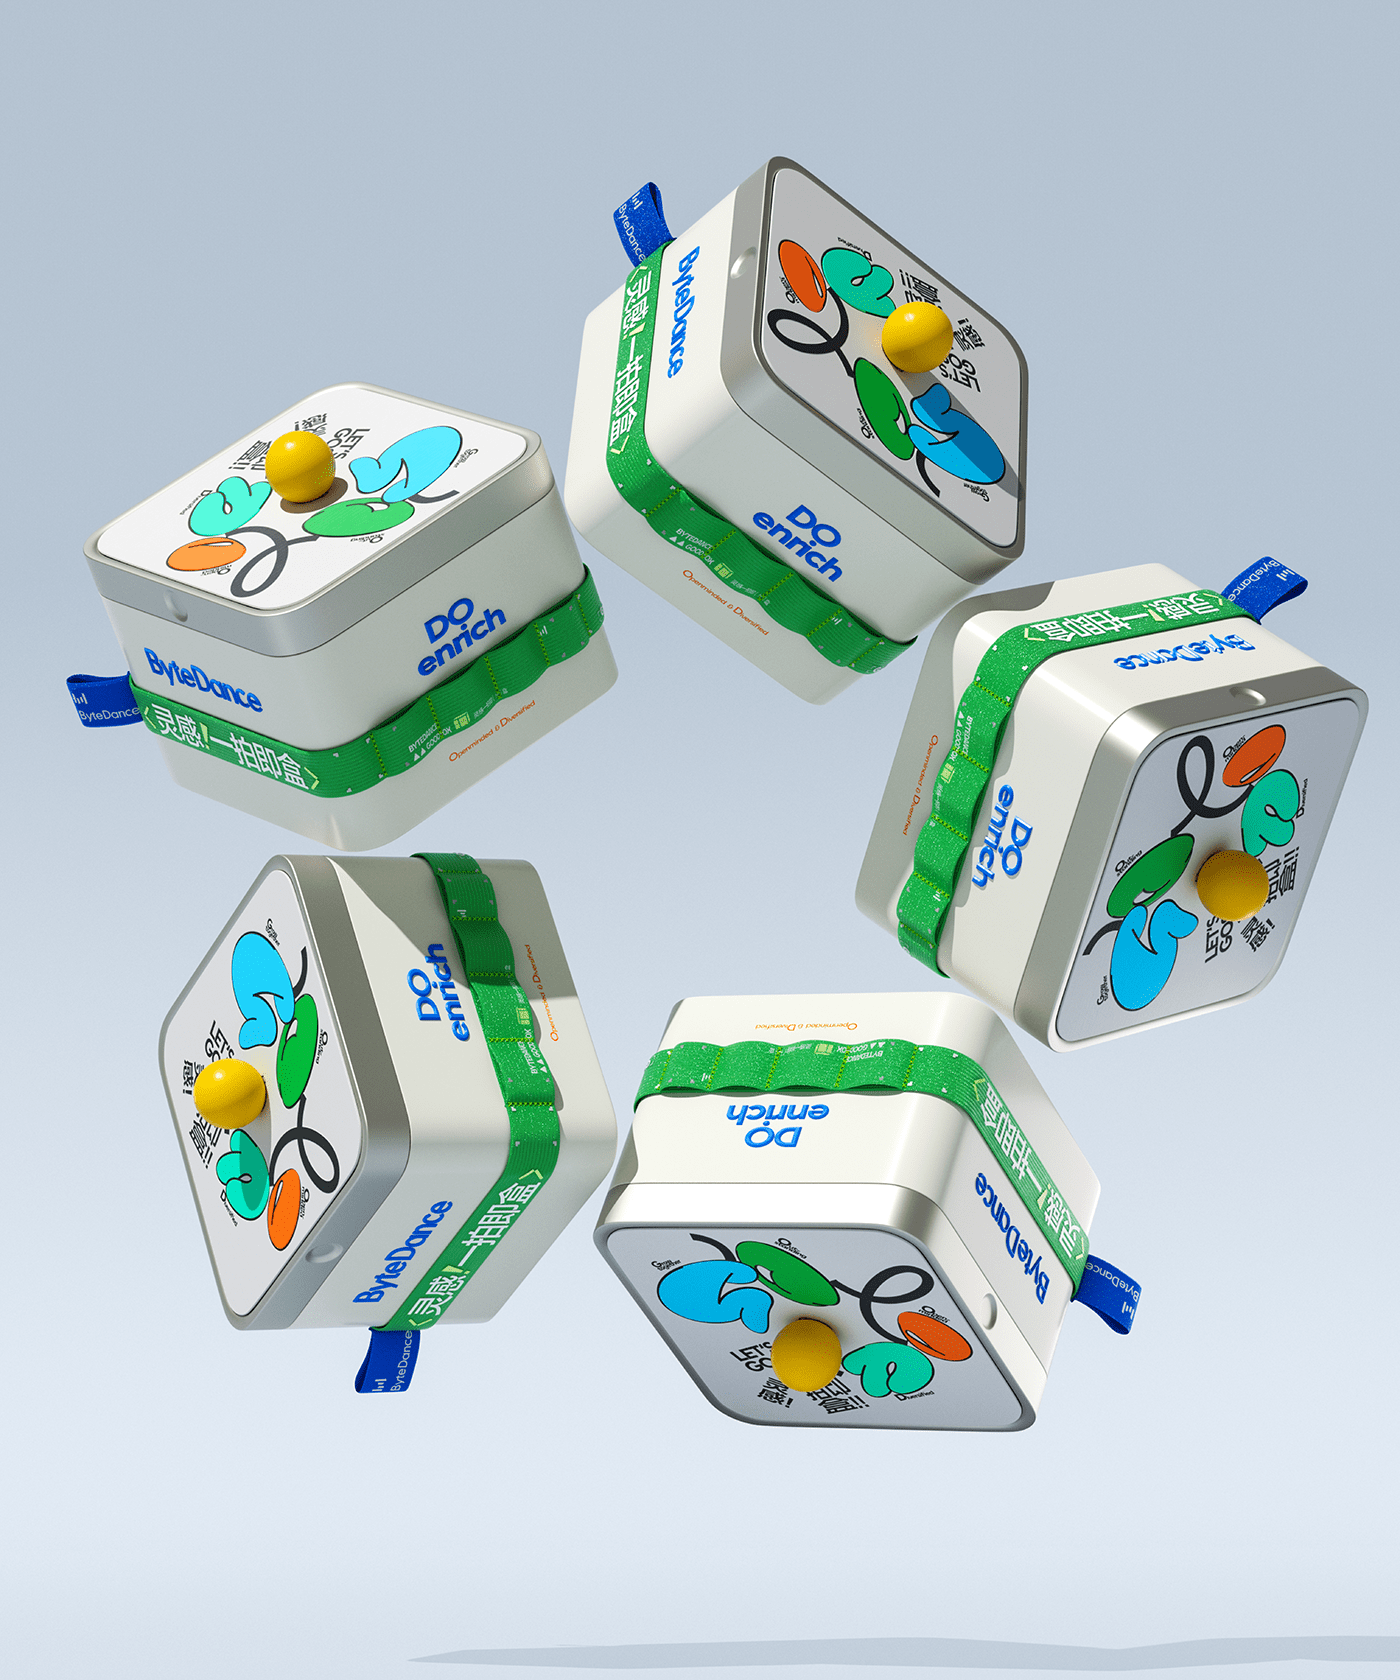 Packaging 3D c4d 包装设计 平面设计 创意 packaging design 图形设计 box